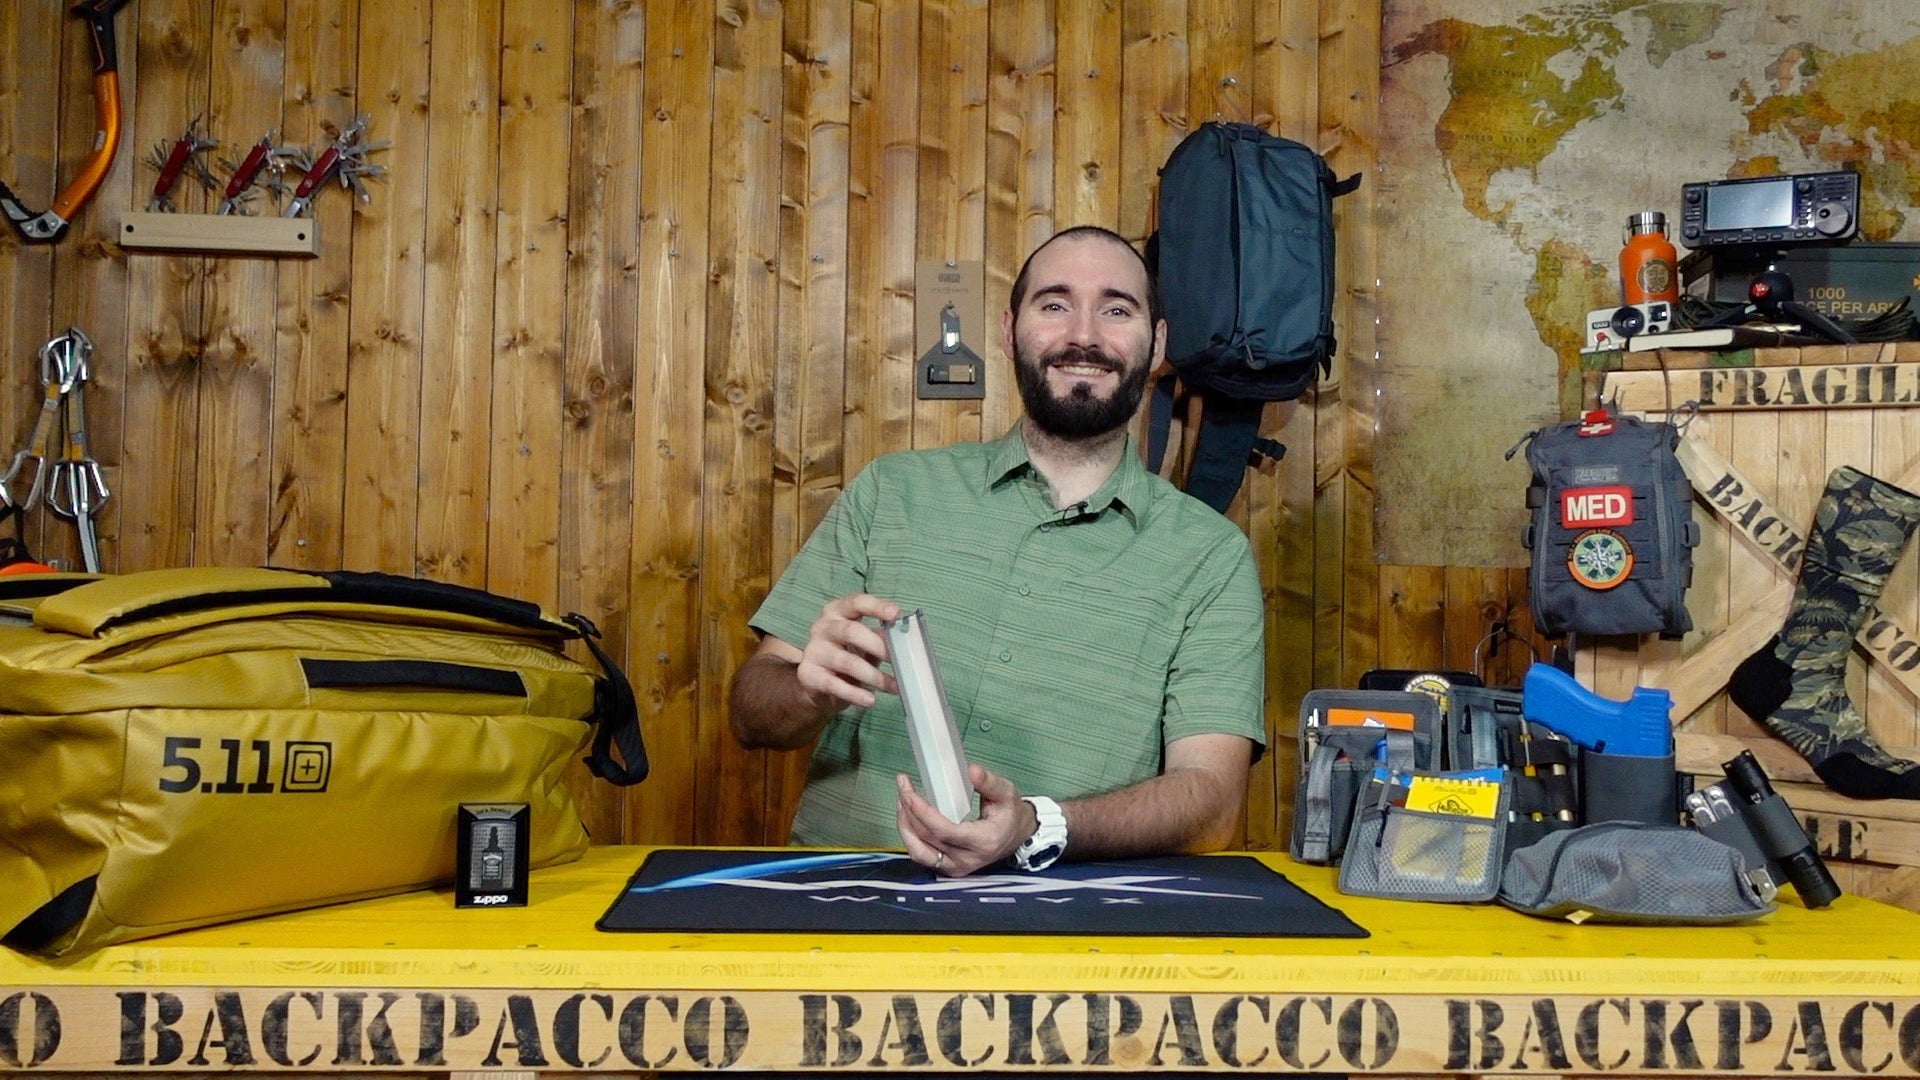 Paolo di Backpacco spiega la Dig Dig Tool di Vargo